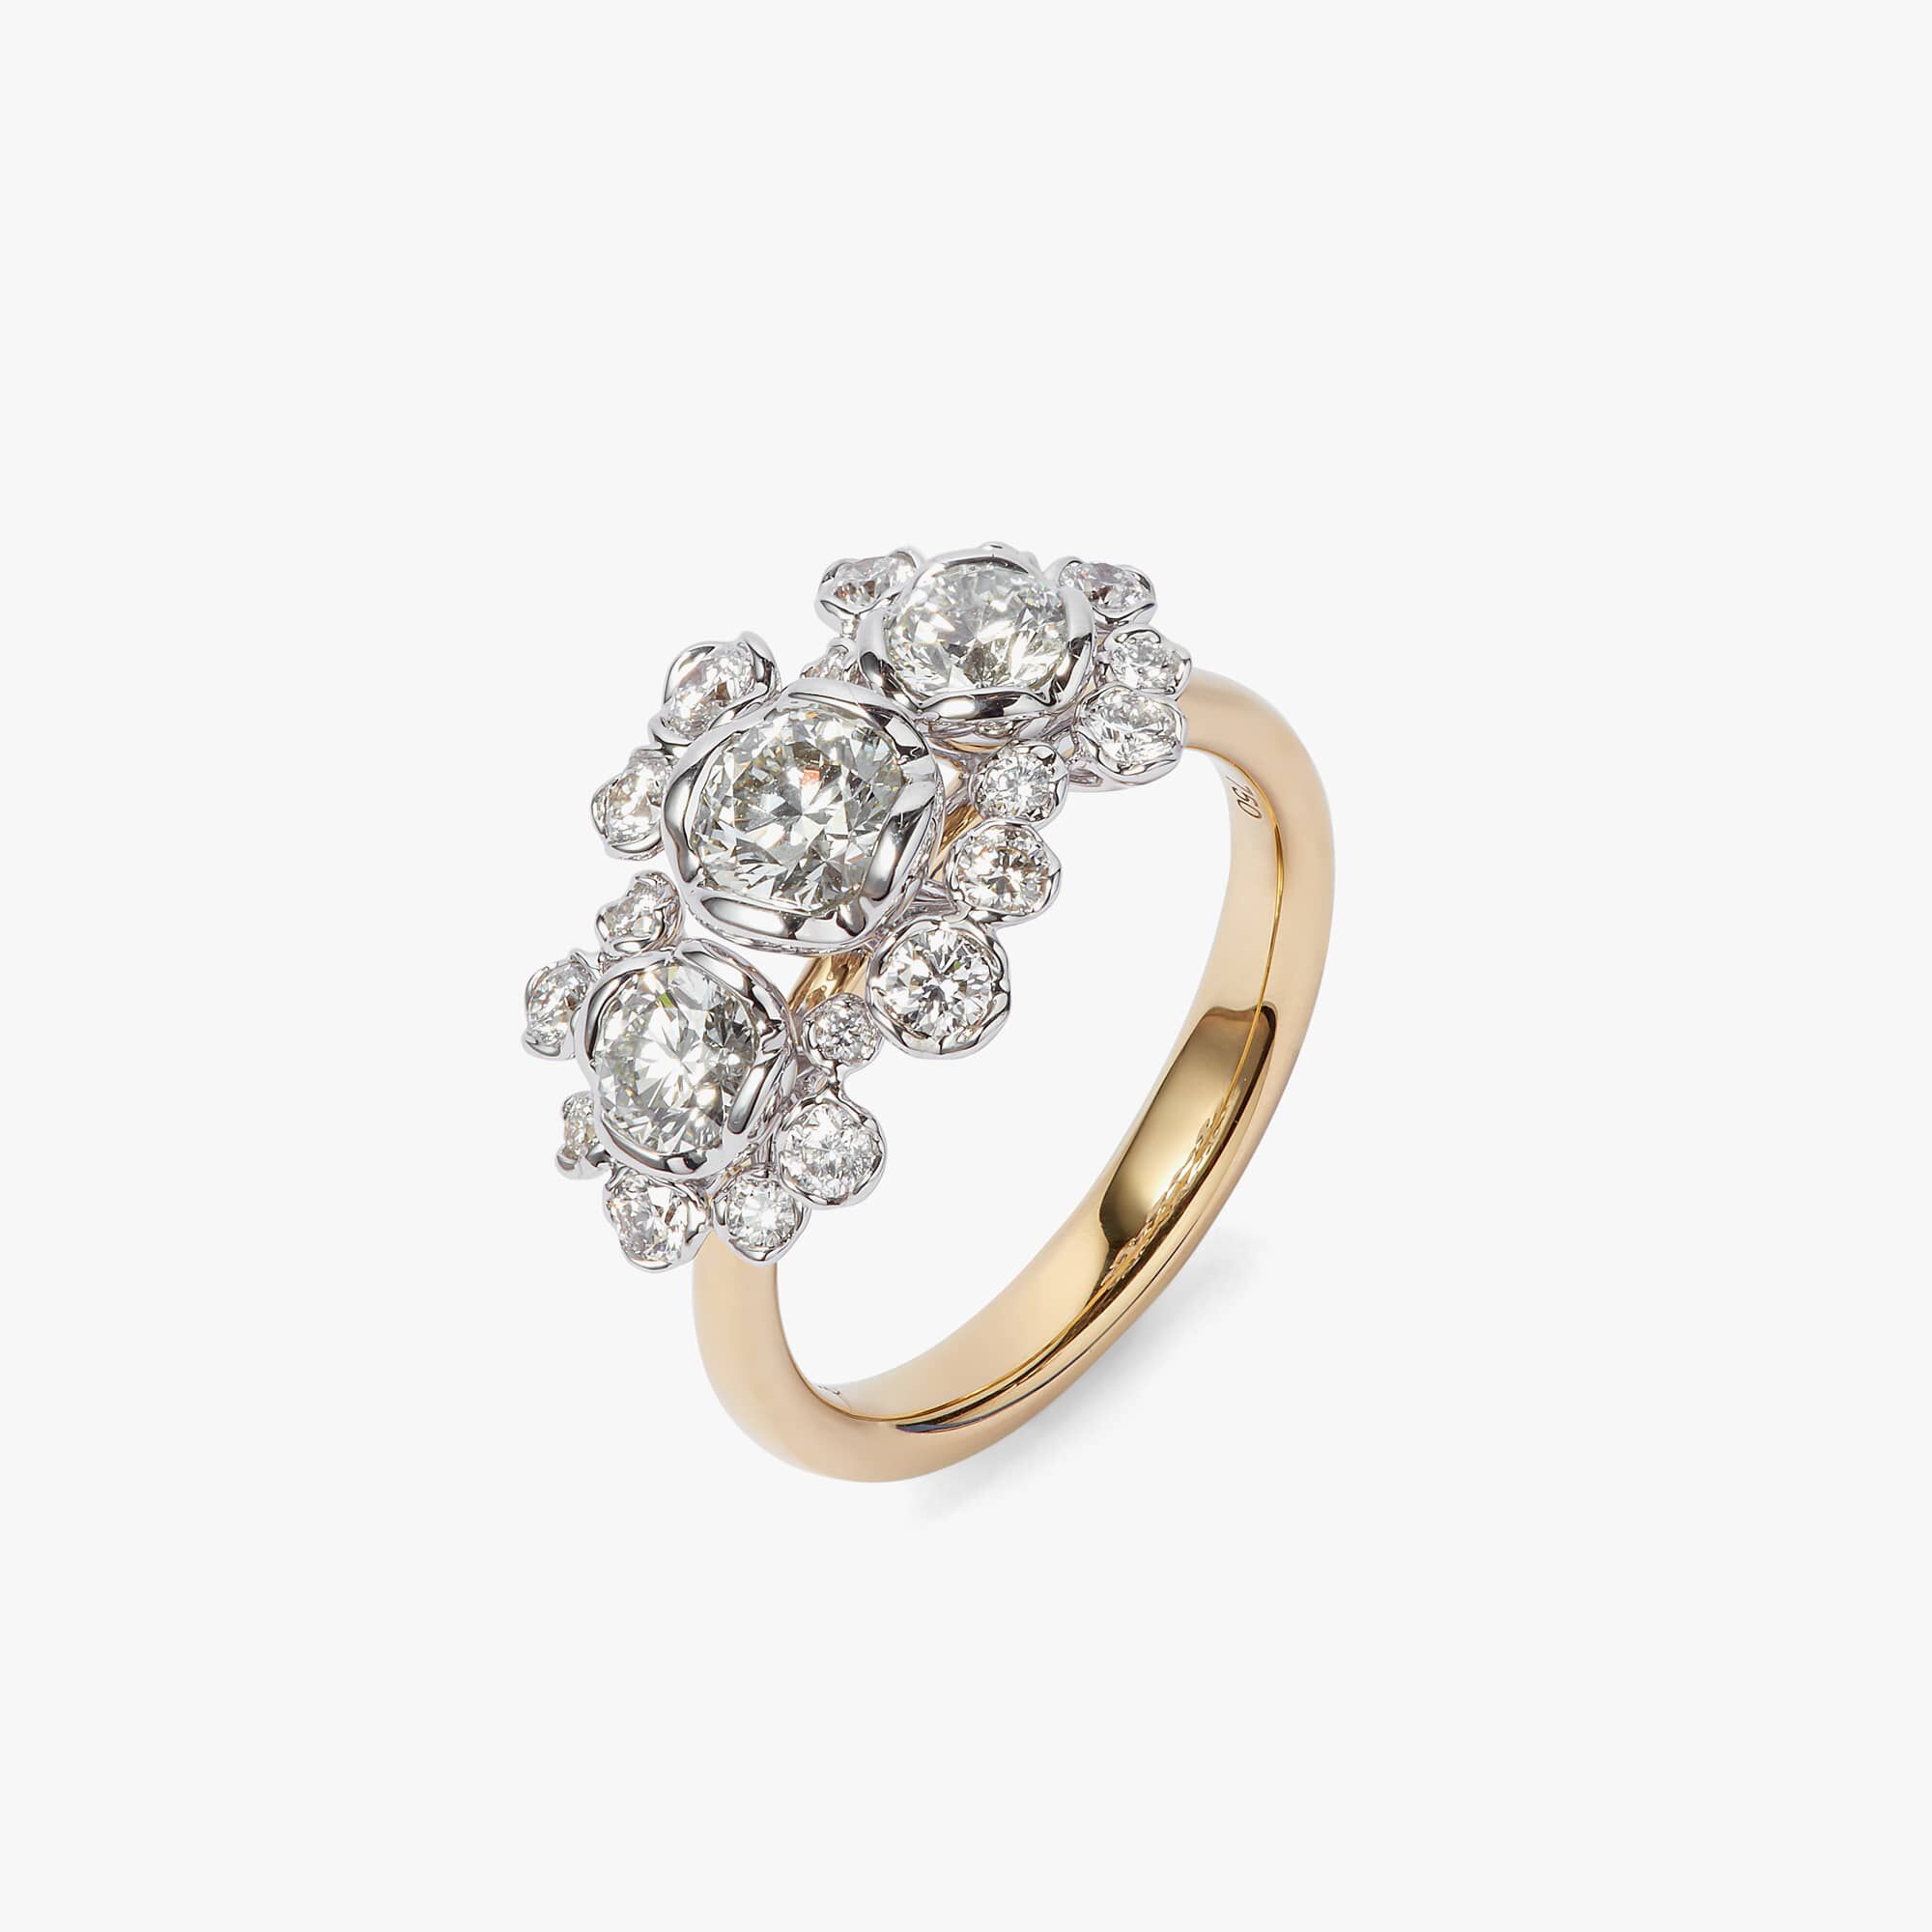 Ochtend Ver weg opleiding Marguerite 18ct Gold Triple Diamond Engagement Ring — Annoushka US